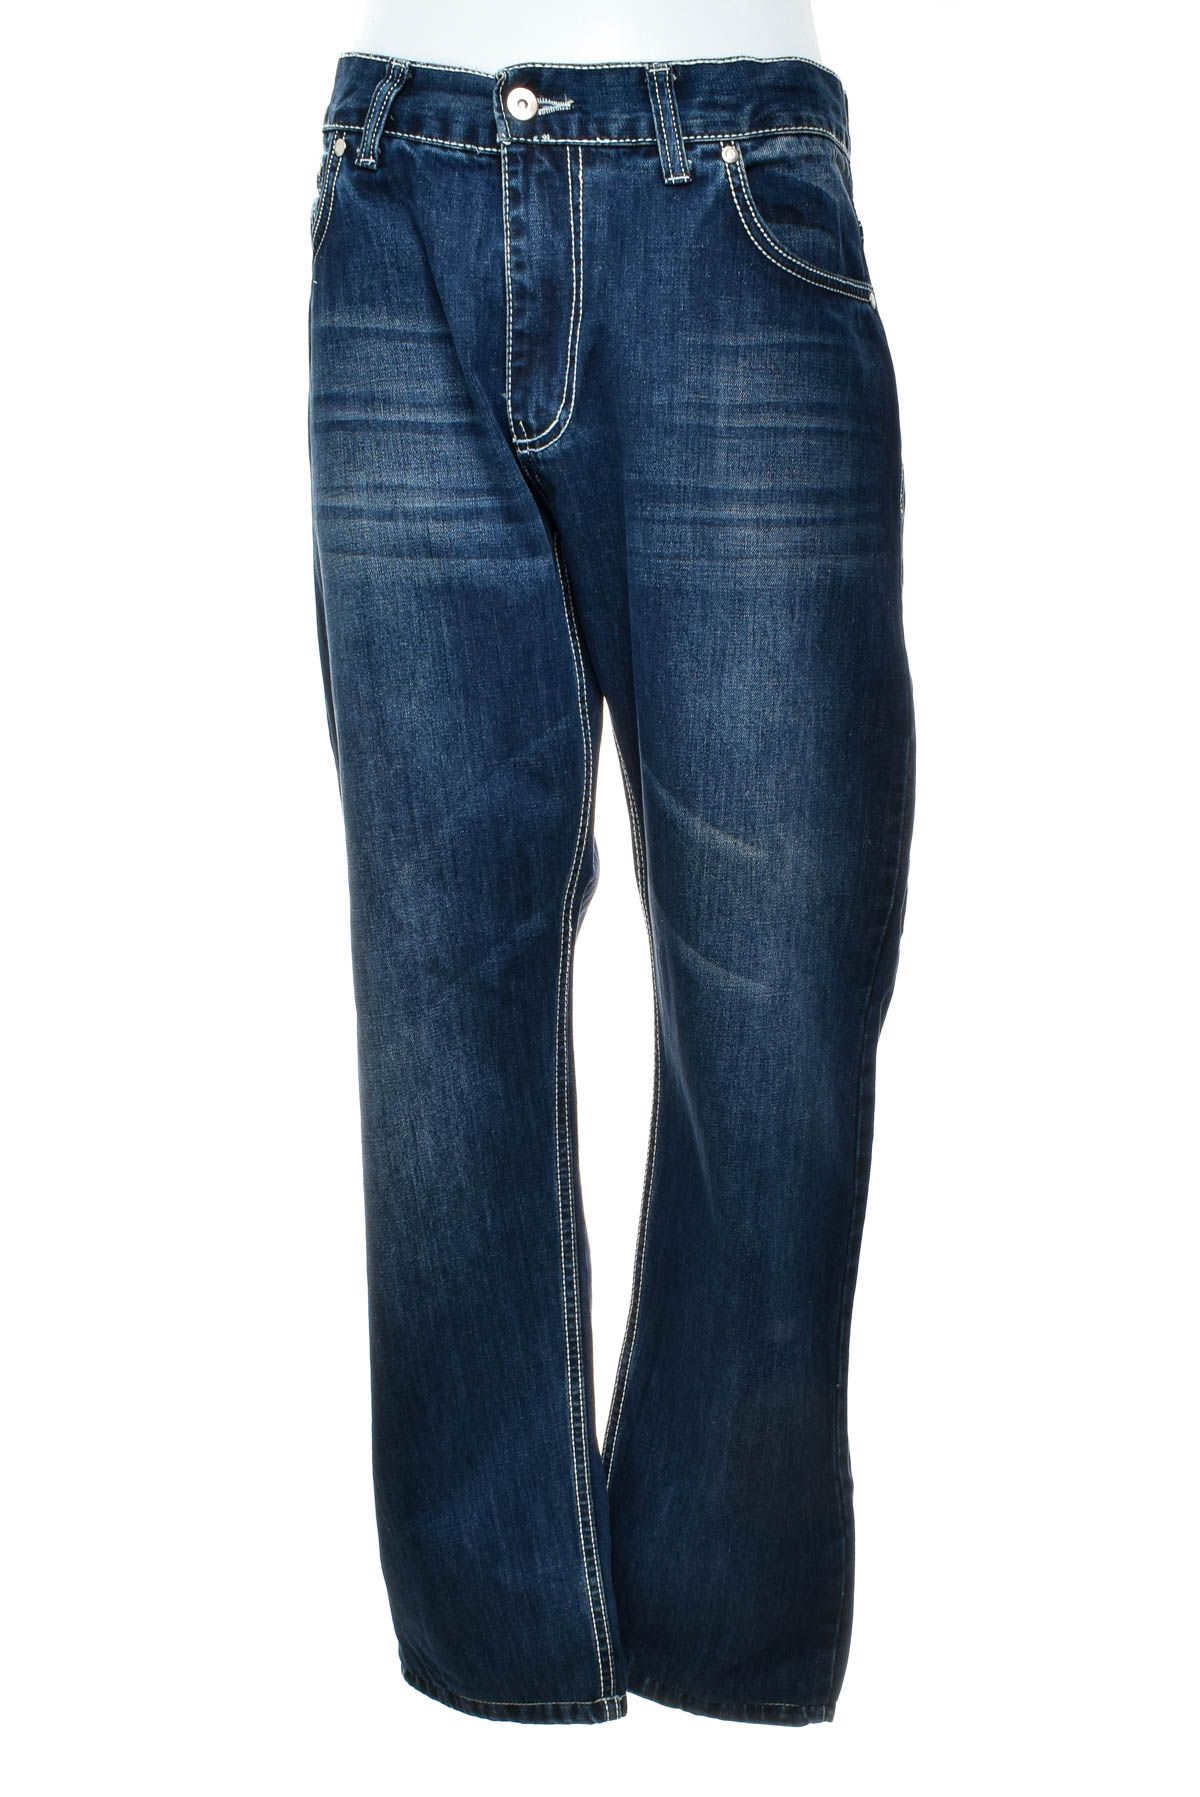 Jeans pentru bărbăți - CAMP DAVID - 0